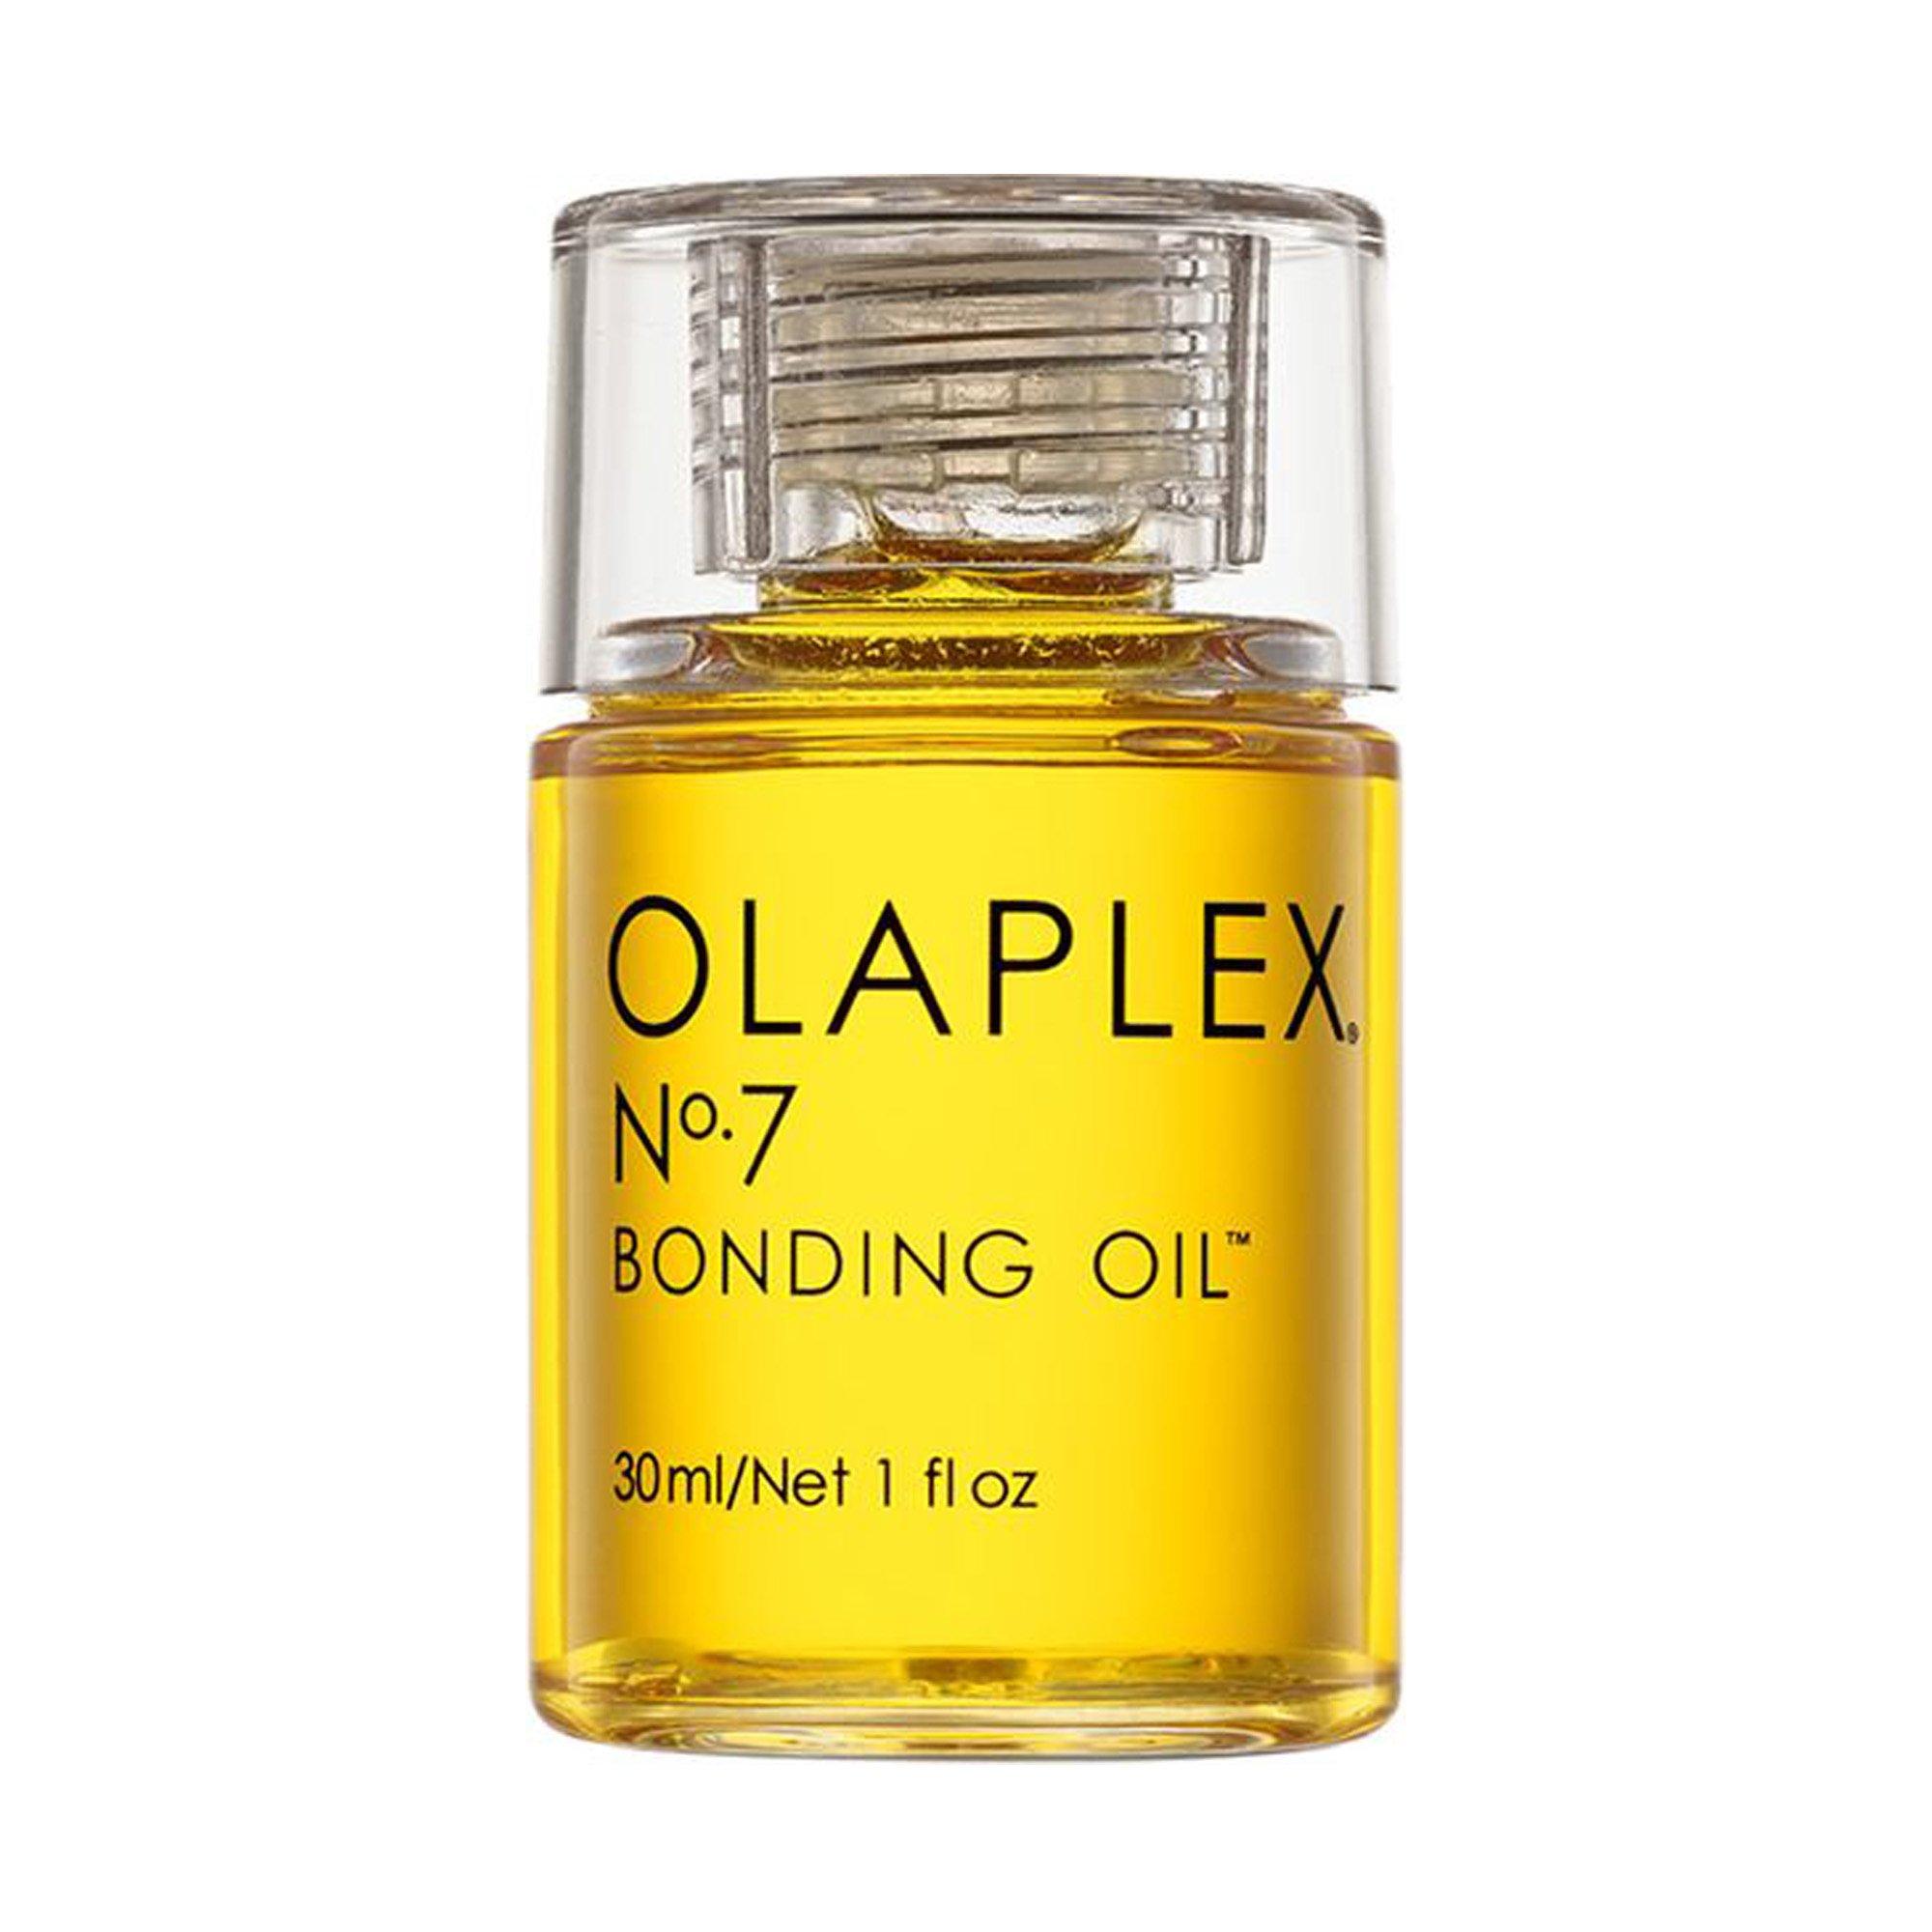 Image of OLAPLEX Nr. 7 Bonding Oil - 30ml